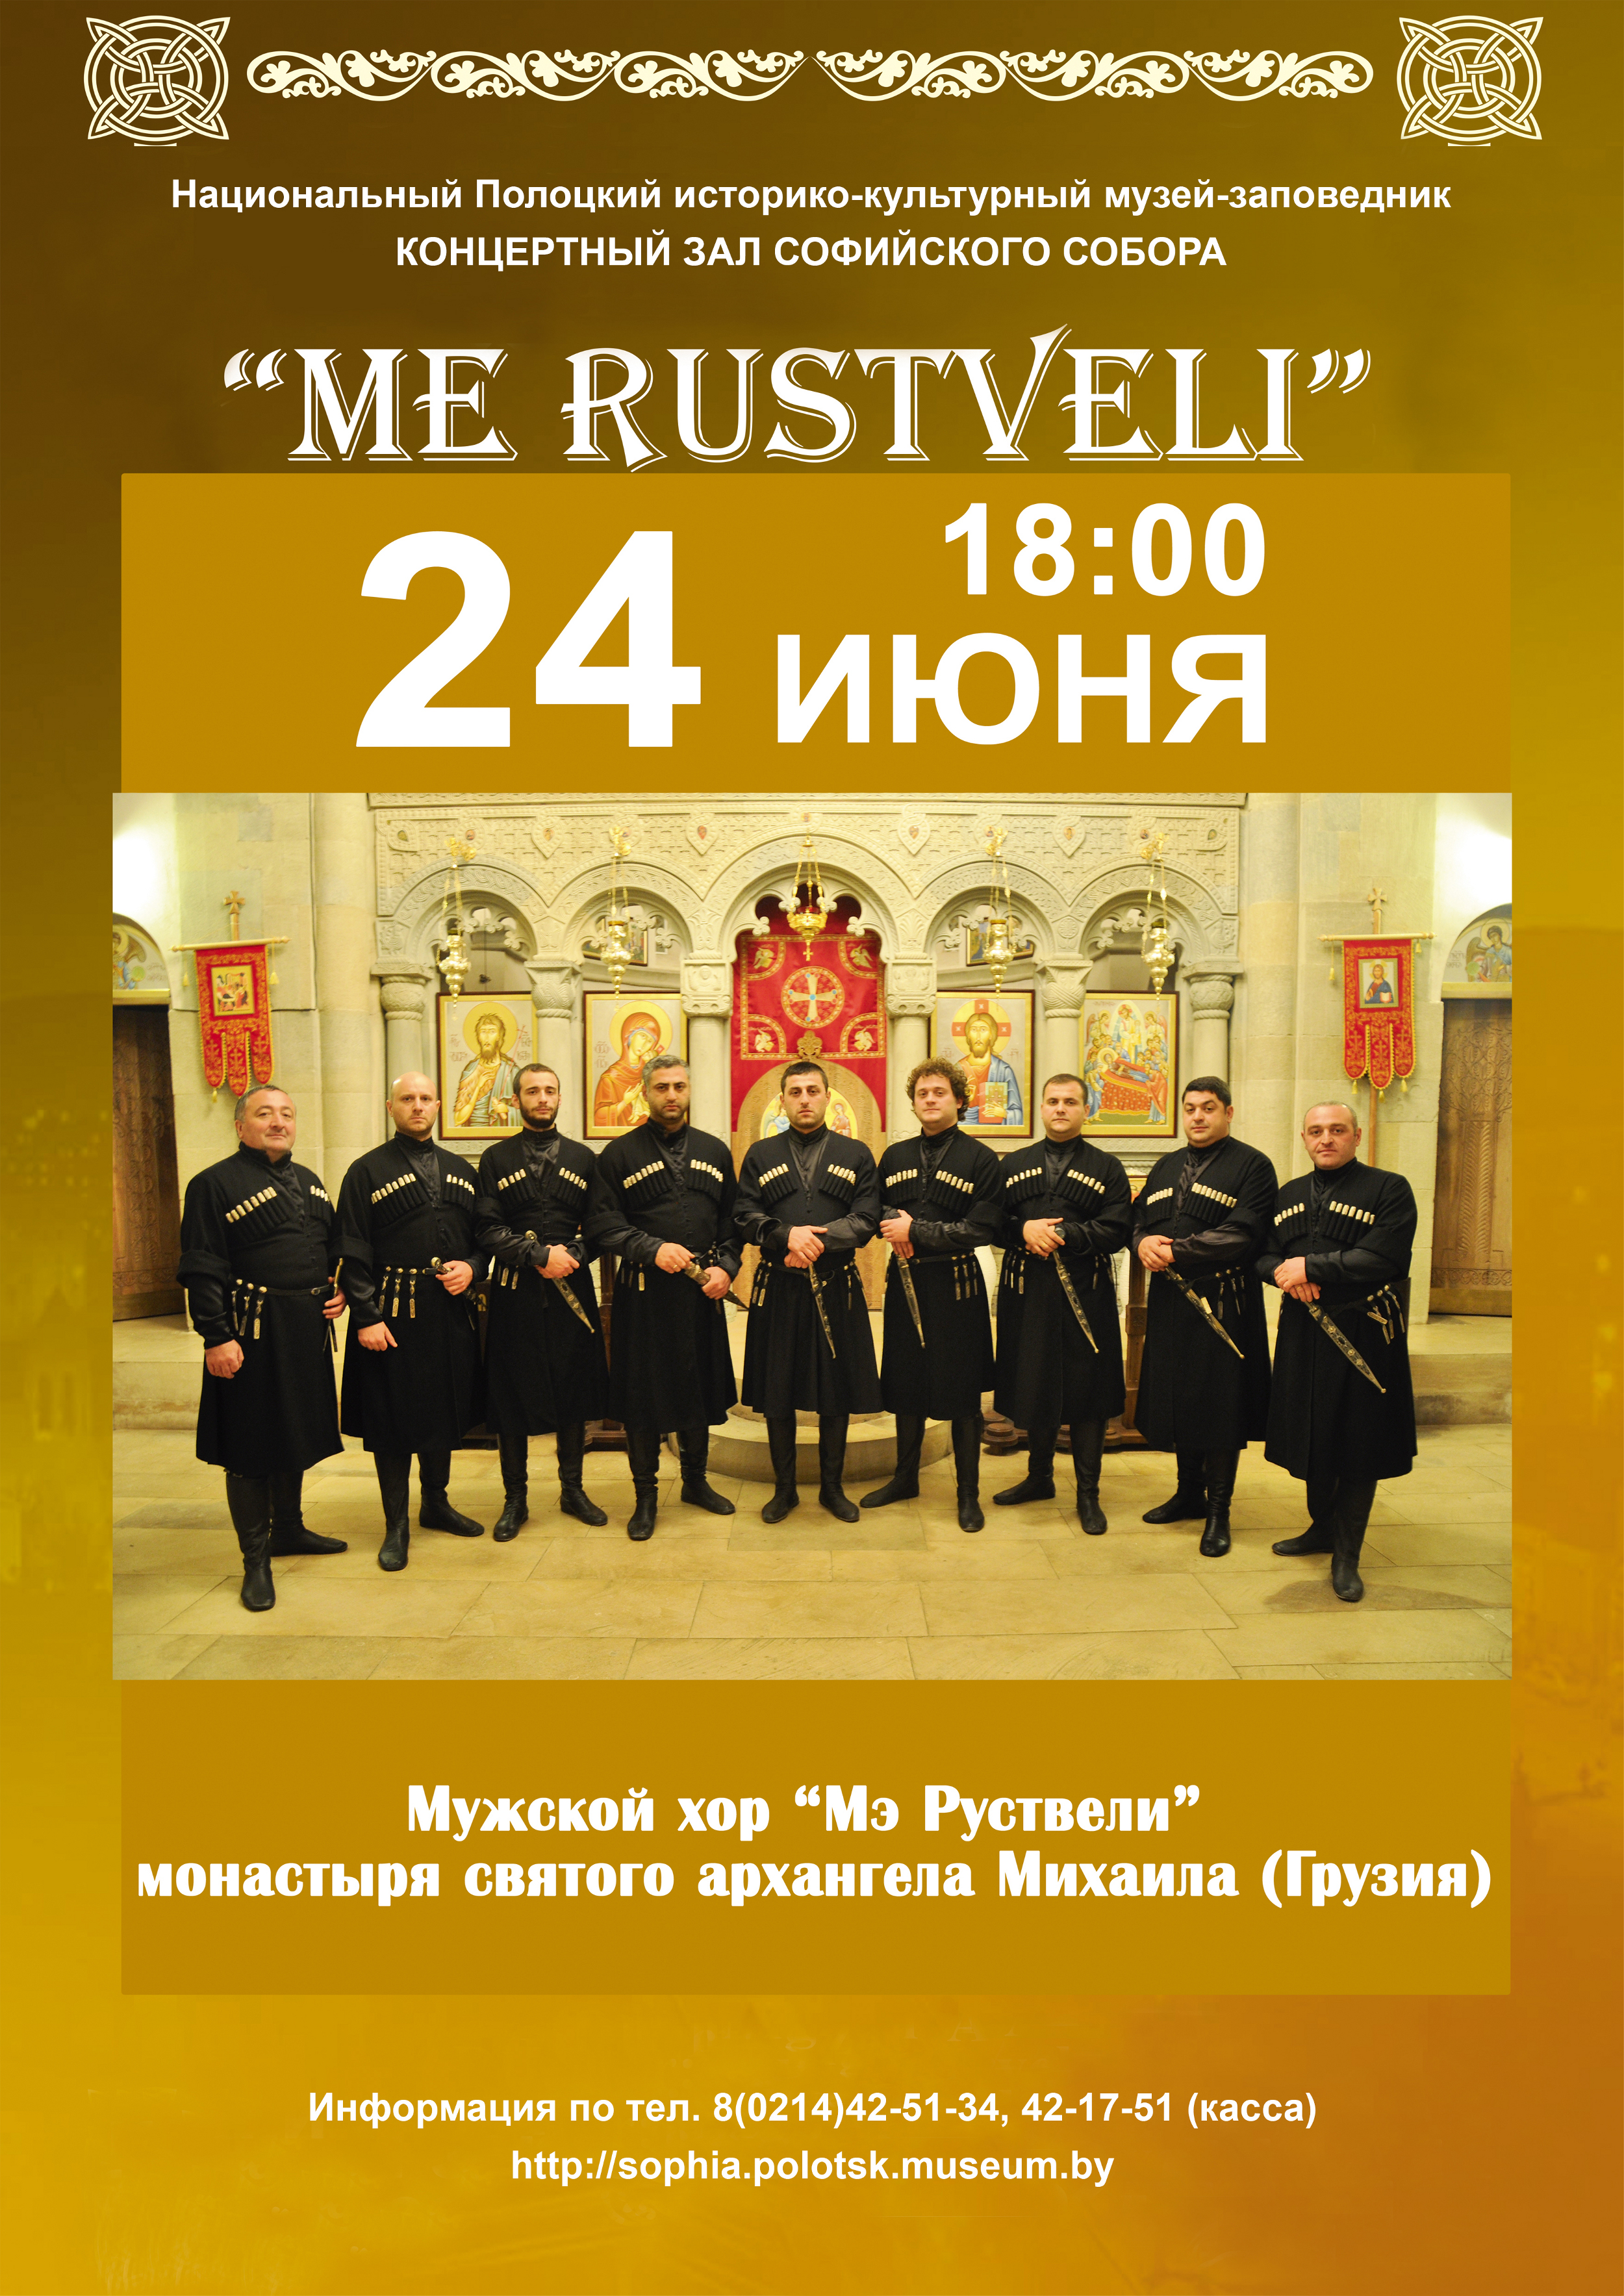 Концерт грузинского мужского хора в Софийском соборе